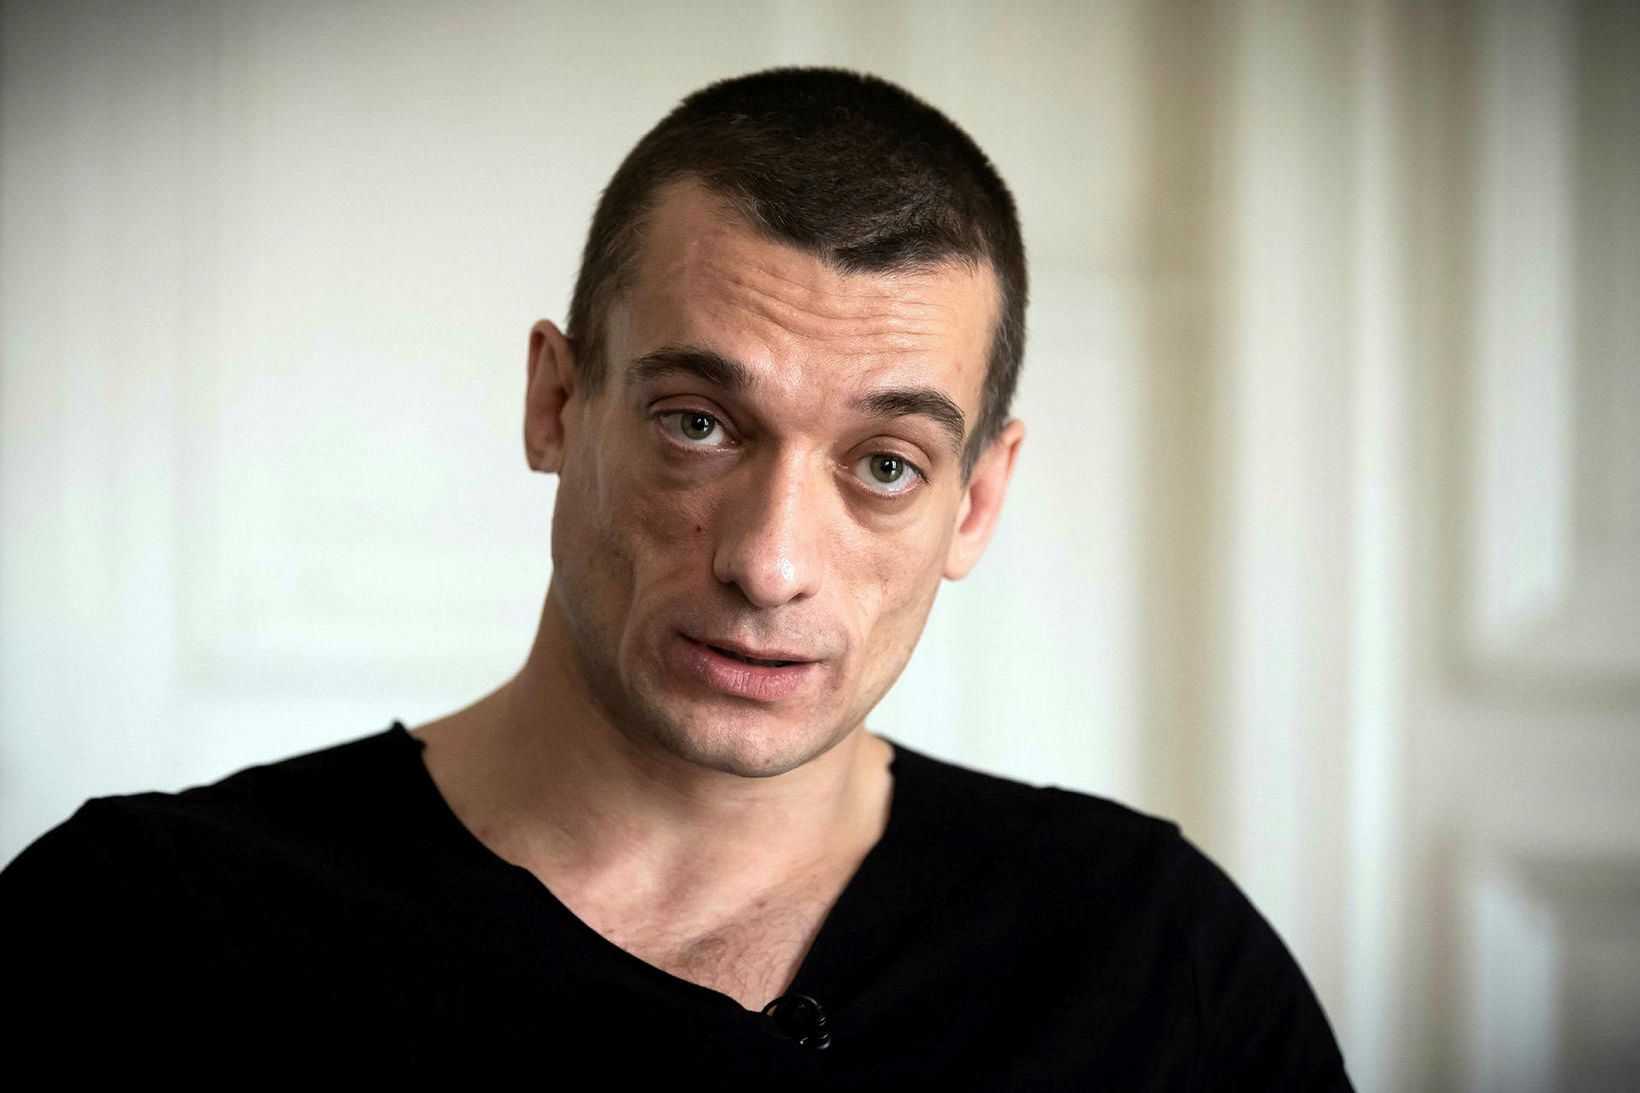 Petr Pavlensky segist hafa verið að afhjúpa hræsnara.